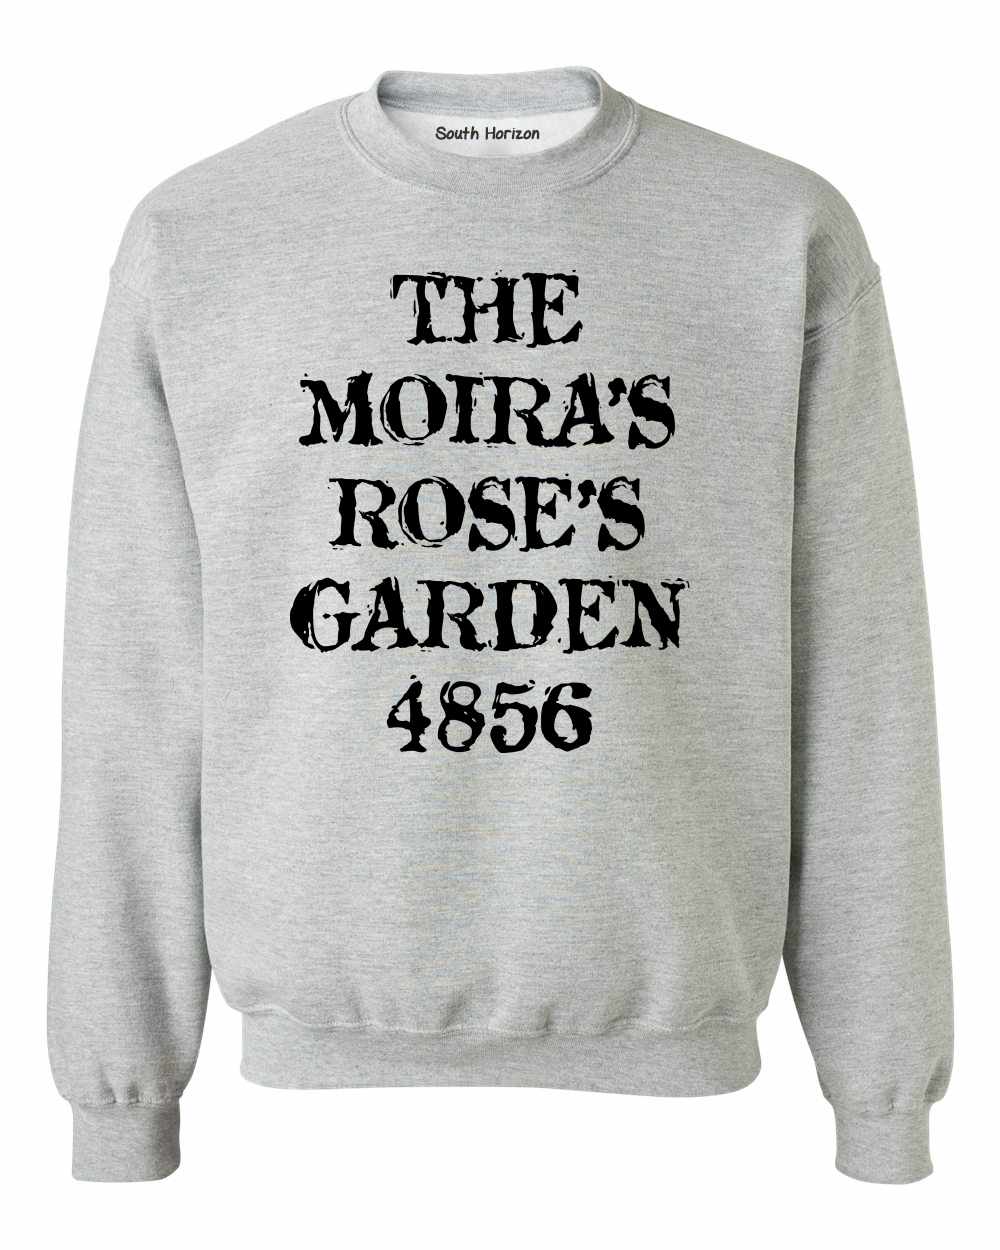 The Moiras Roses Garden 4856 on SweatShirt (#1052-11)